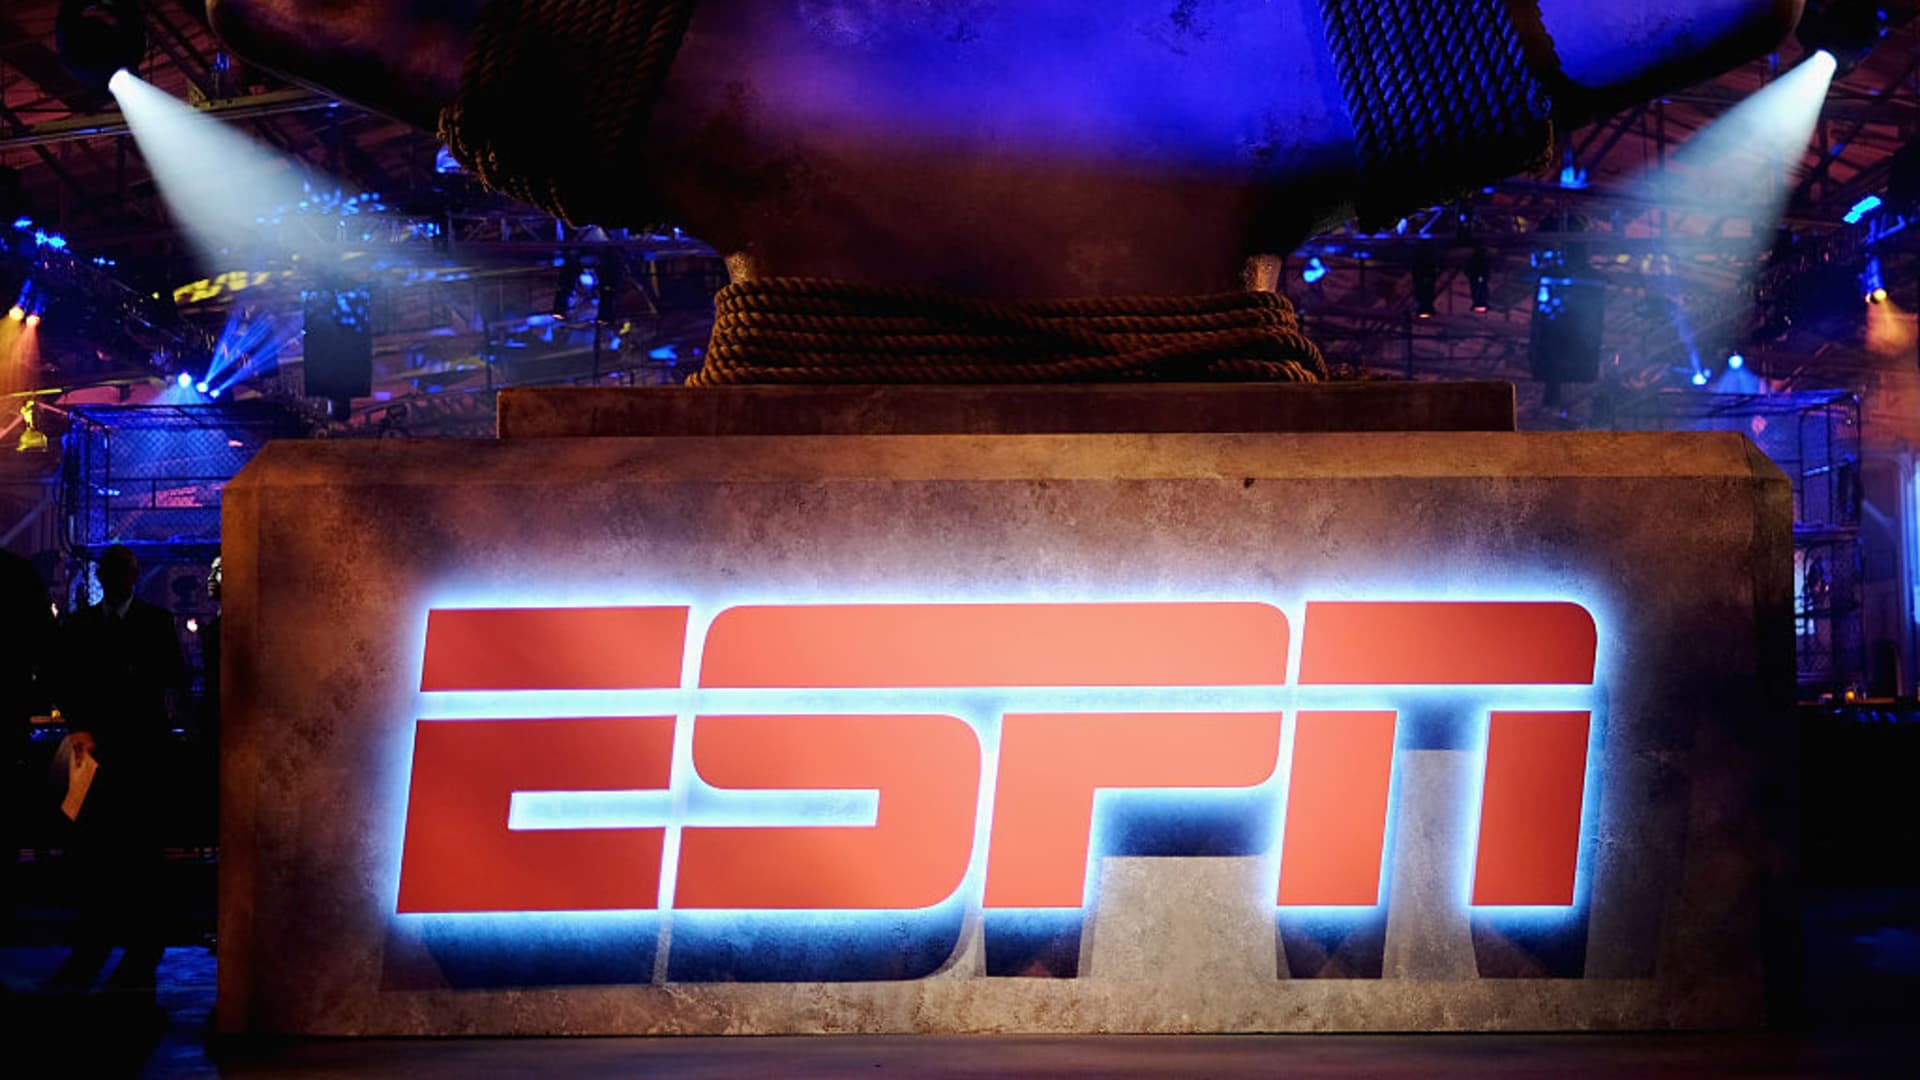 Disney raises price of ESPN+ 43% to $9.99 per month beginning Aug. 23